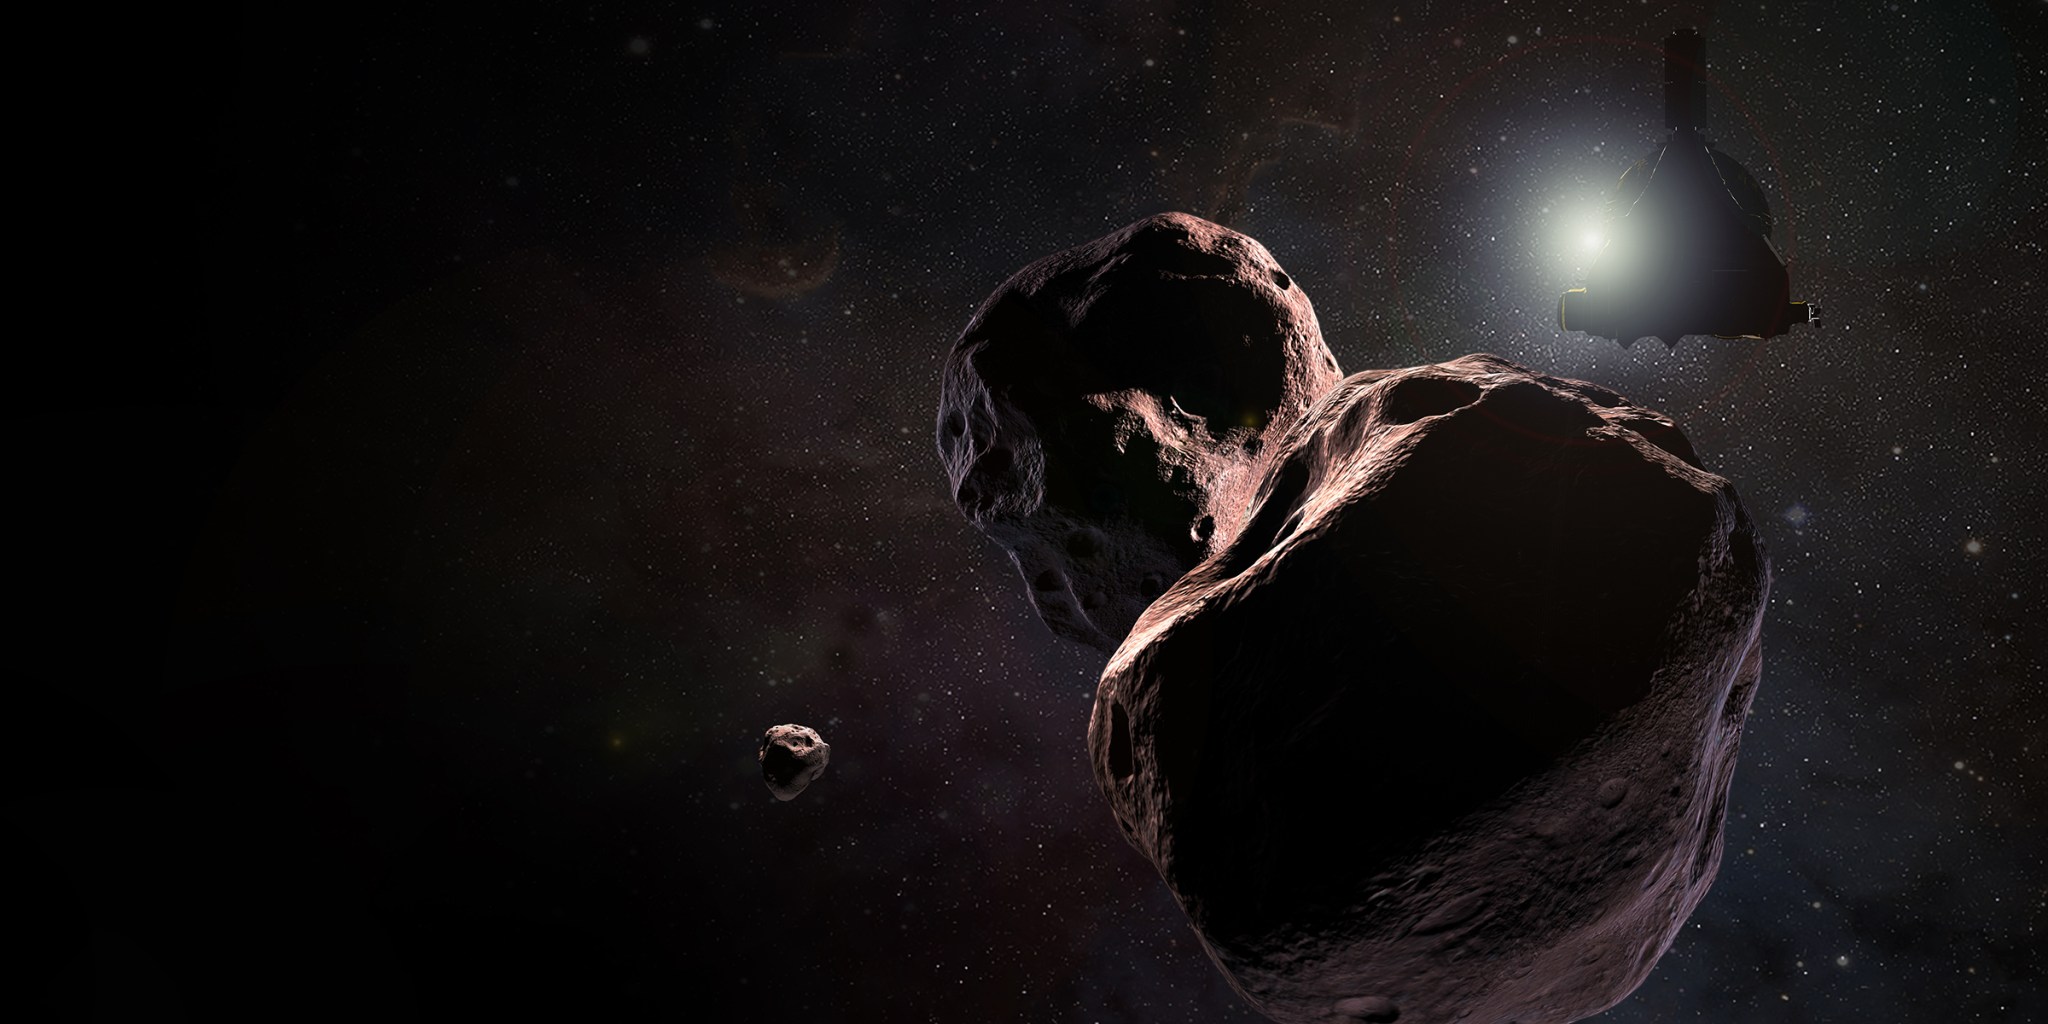 NASA’s New Horizons spacecraft encountering 2014 MU69